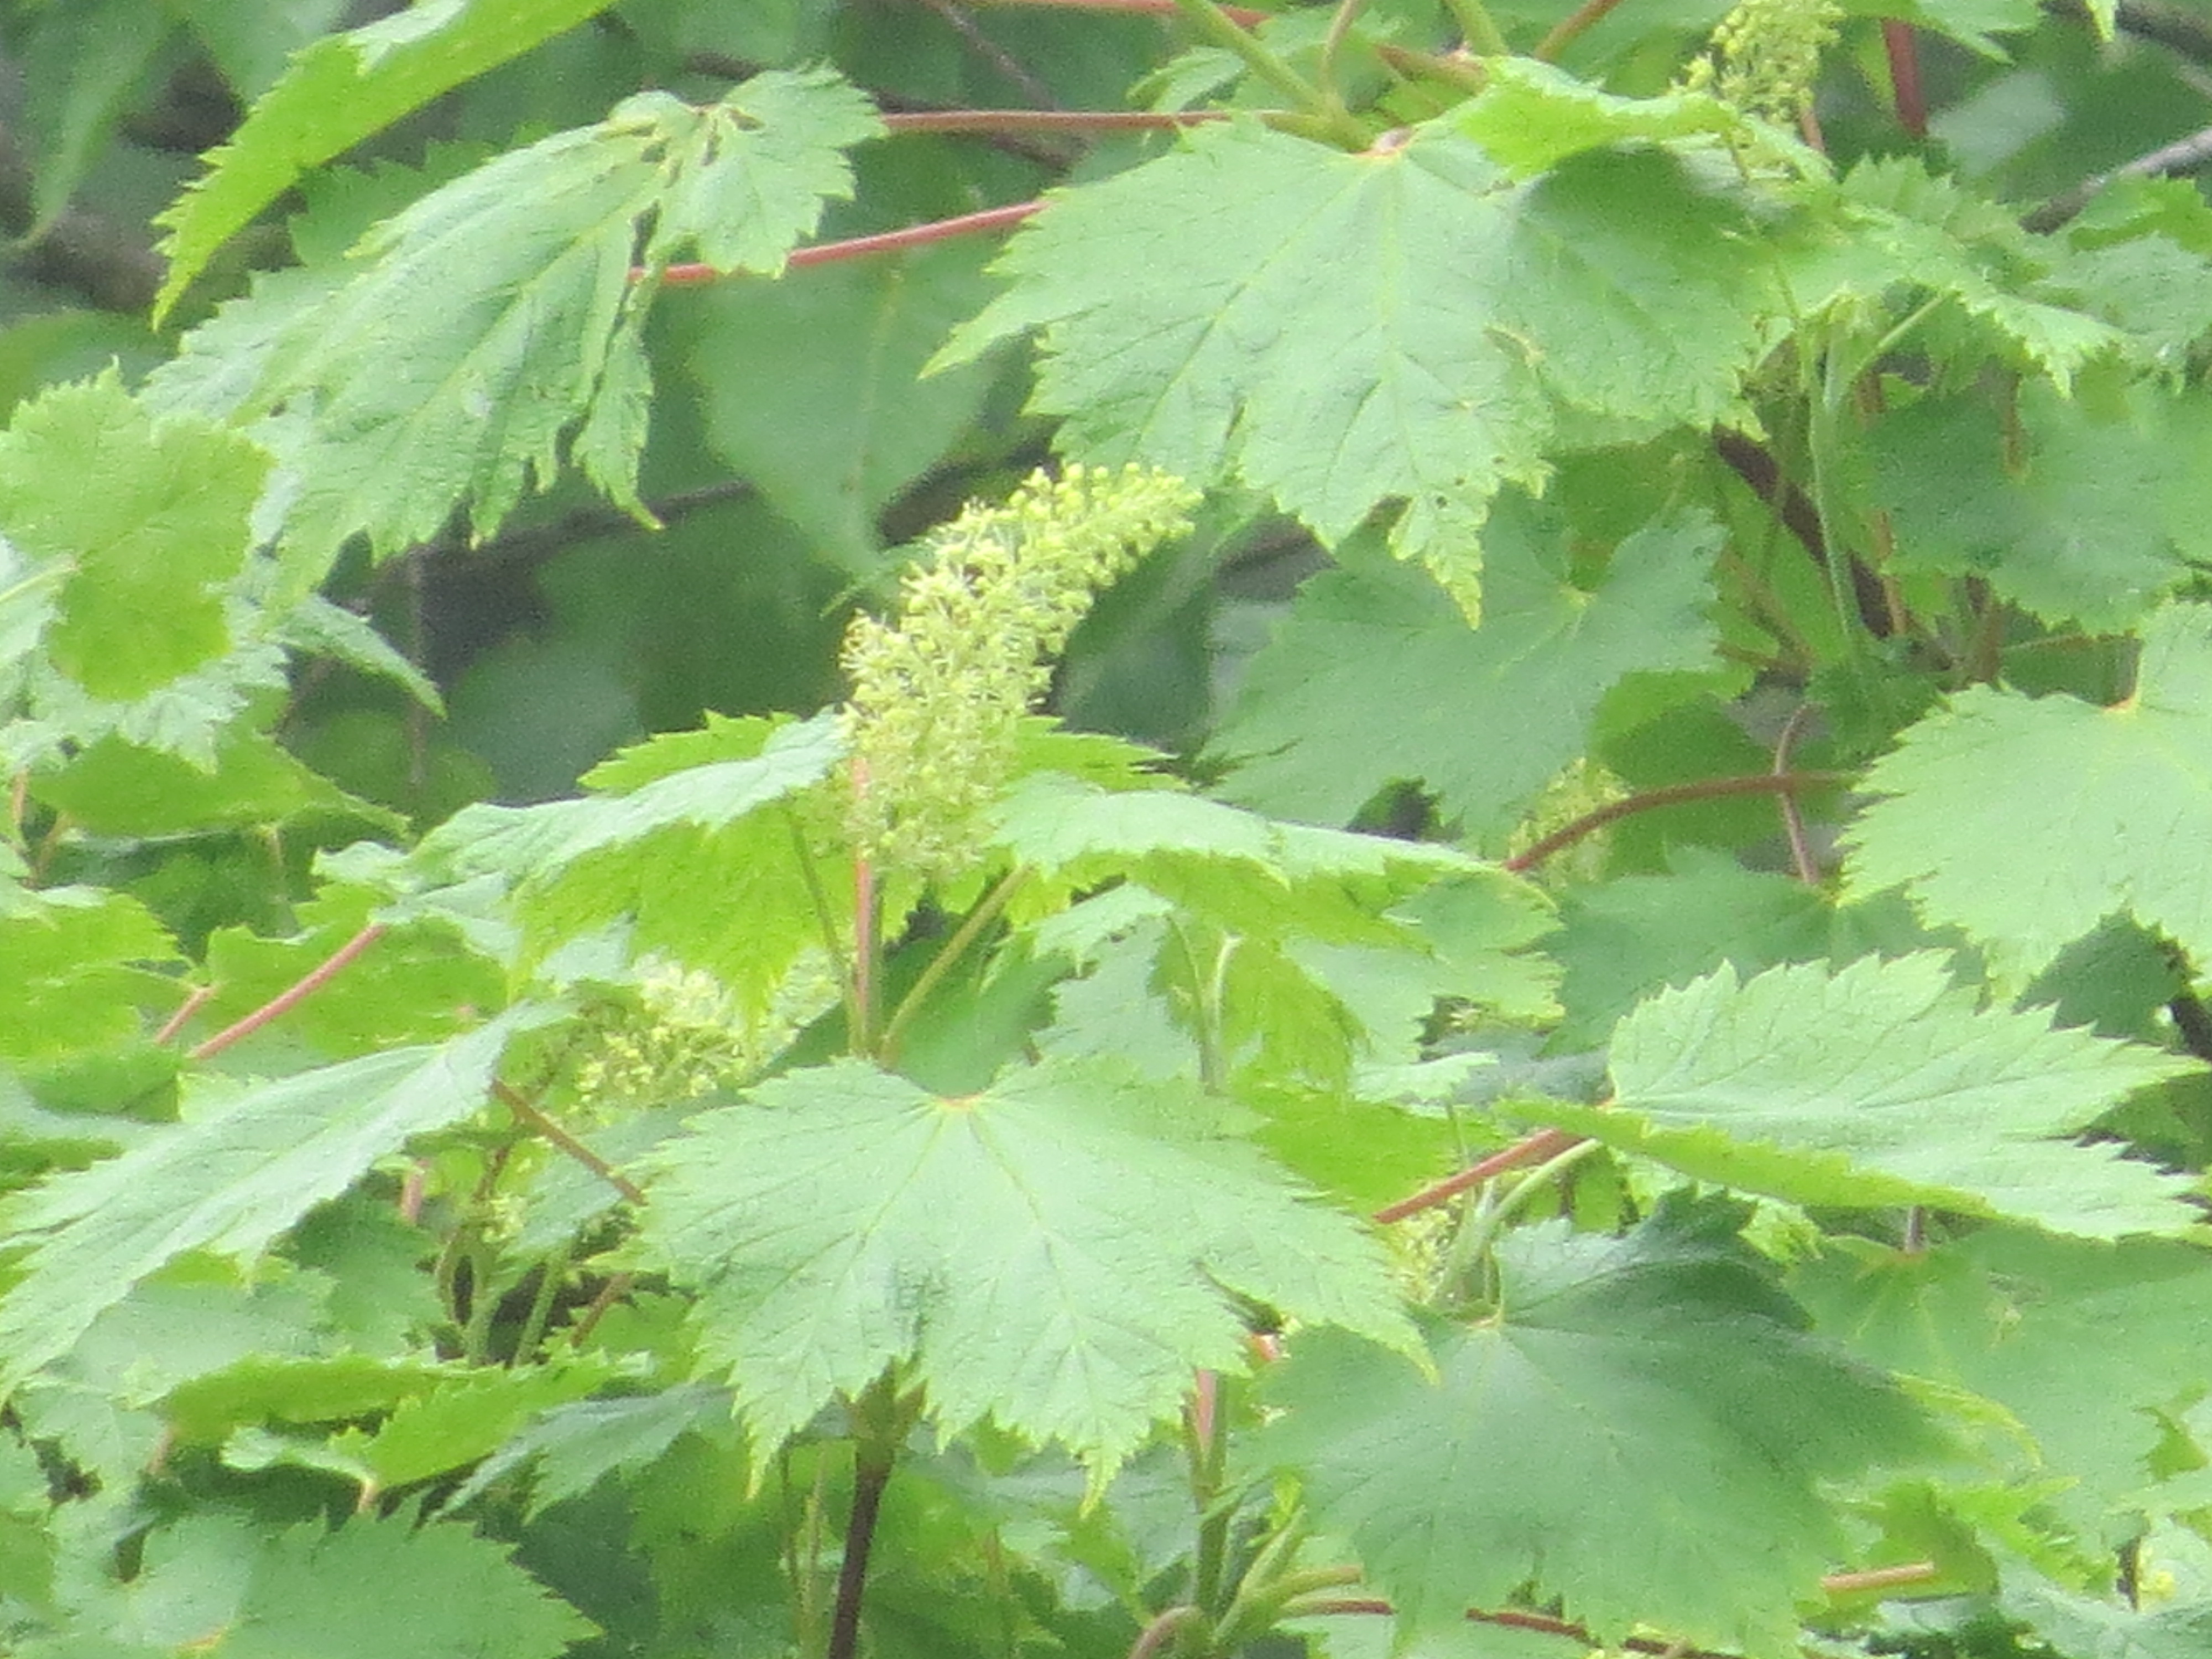 Acer caudatum subsp. ukurundense - Клён укурунду, Клён-берёза или Клён жёлтый